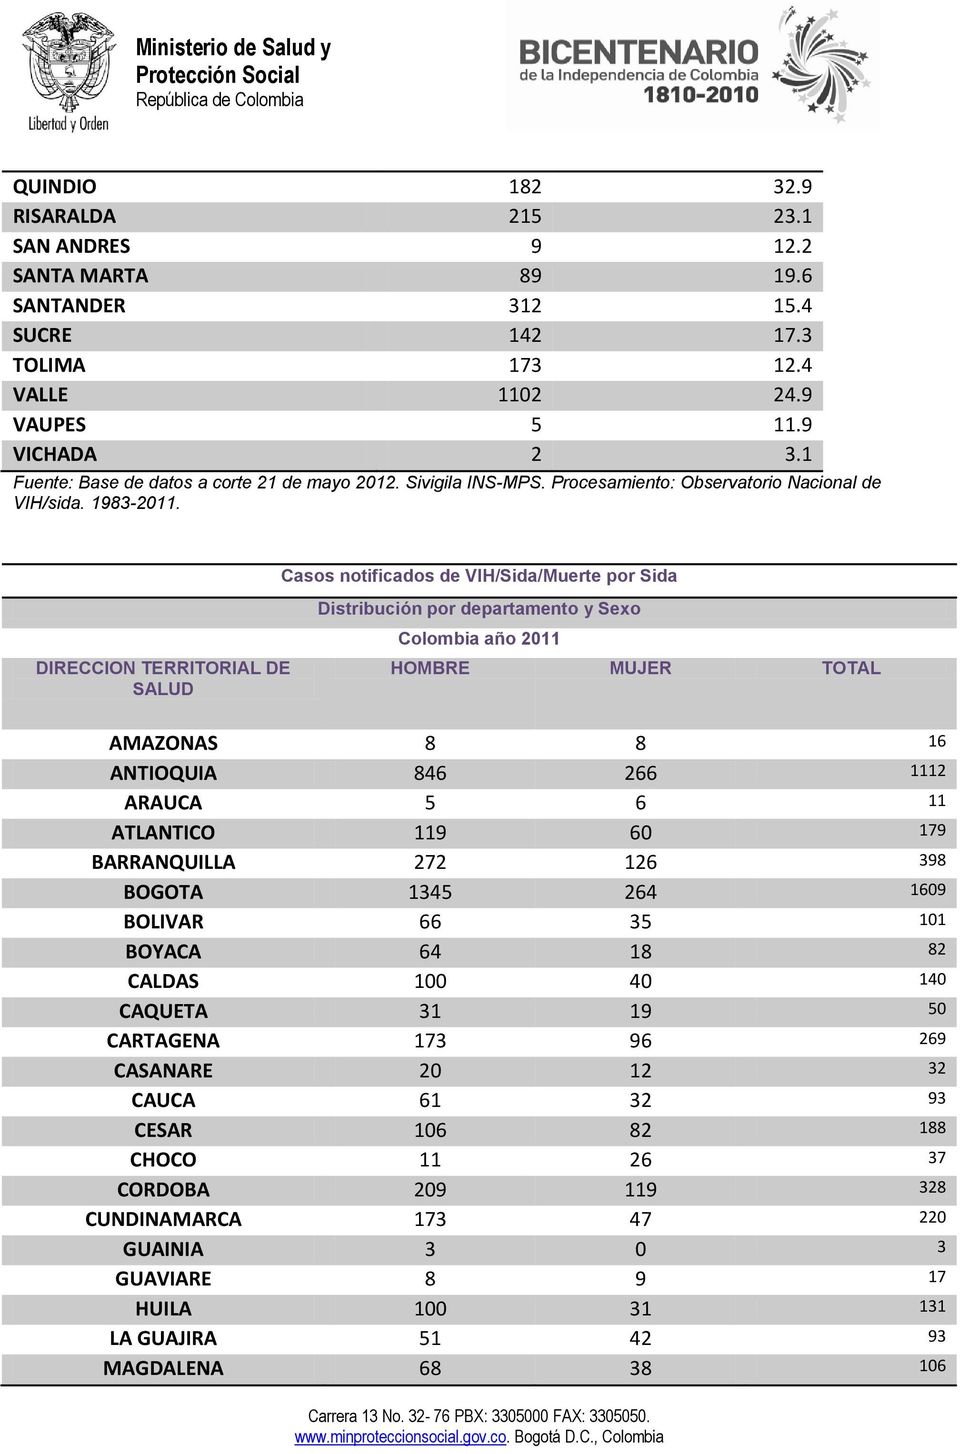 Casos notificados de VIH/Sida/Muerte por Sida DIRECCION TERRITORIAL DE SALUD Distribución por departamento y Sexo Colombia año 2011 HOMBRE MUJER TOTAL AMAZONAS 8 8 16 ANTIOQUIA 846 266 1112 ARAUCA 5